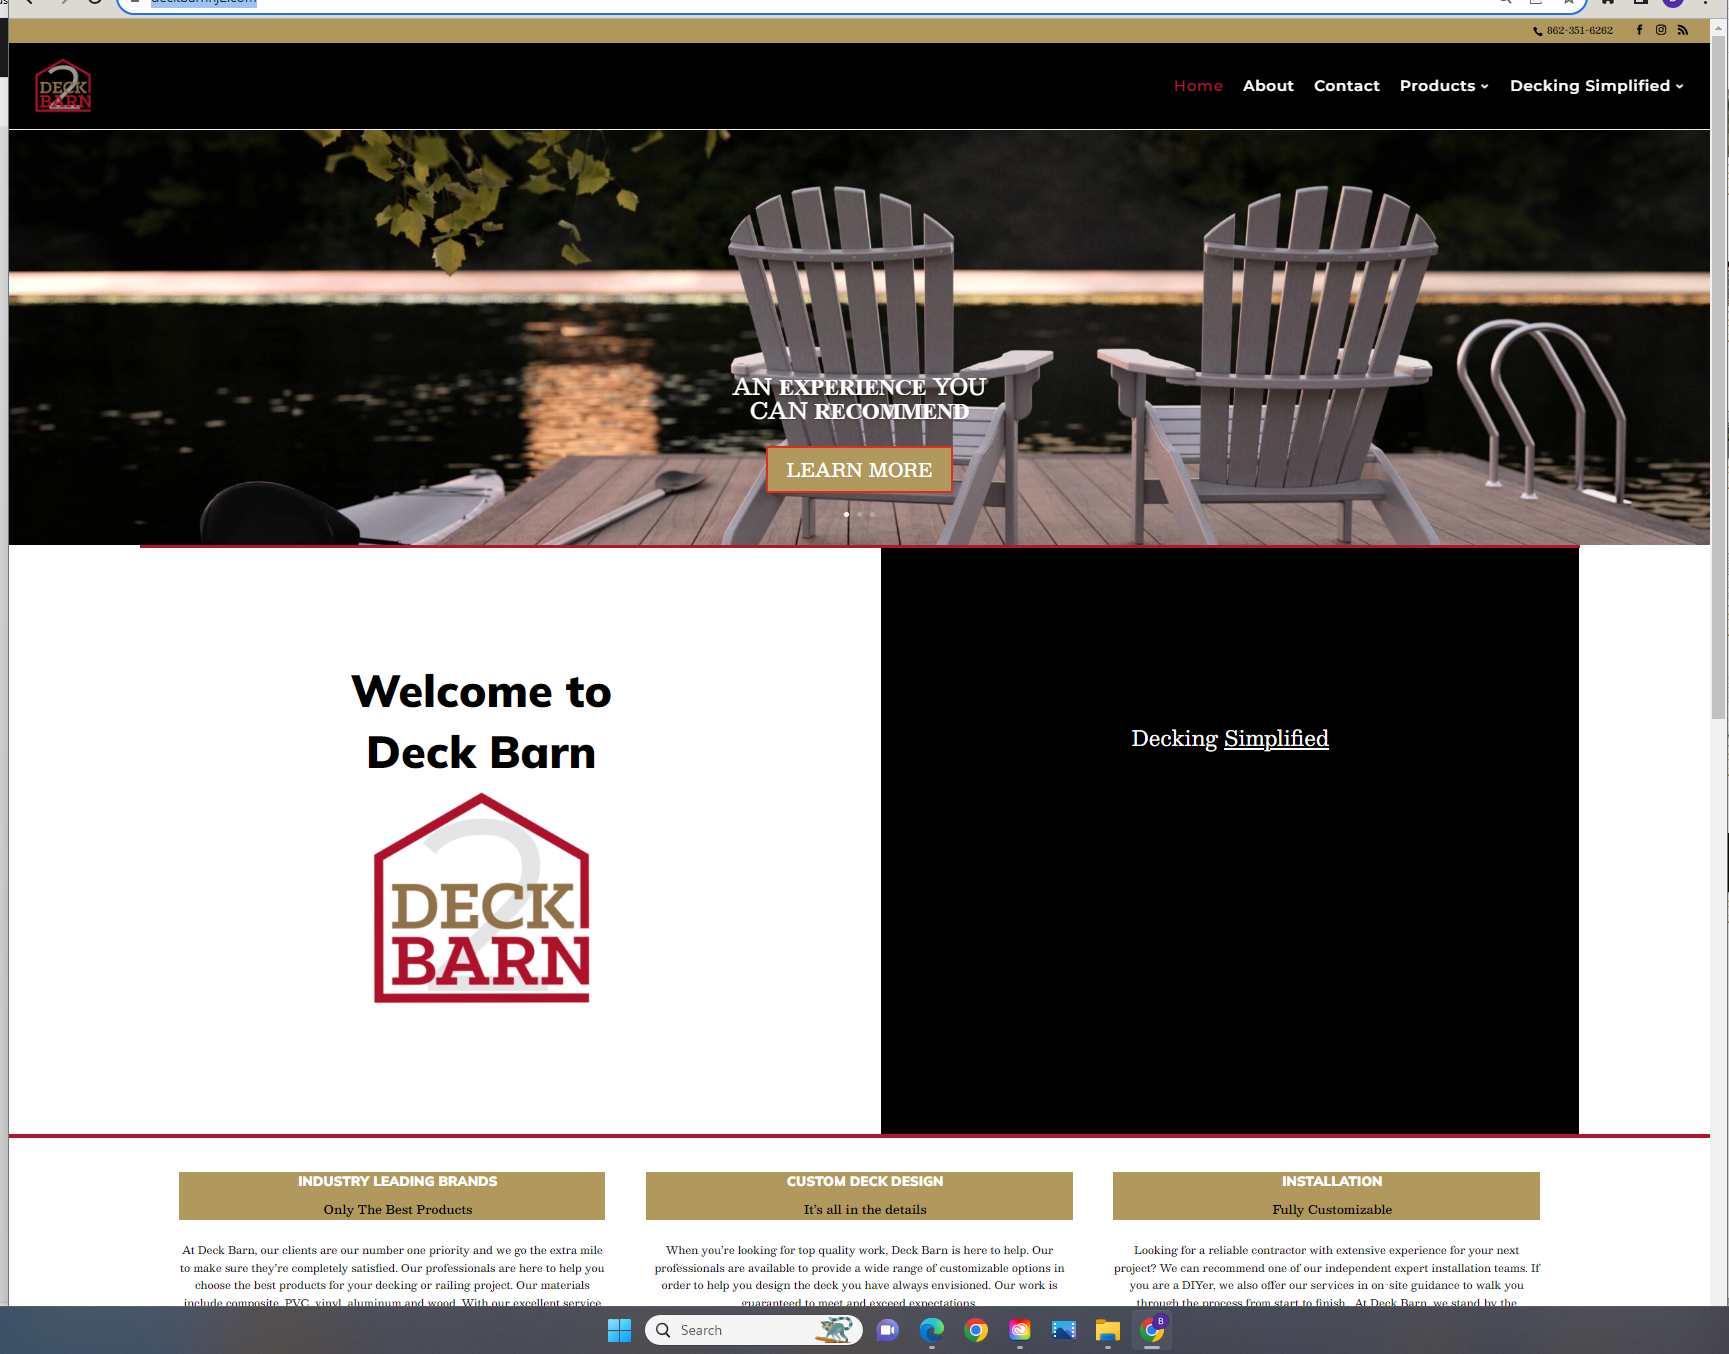 Deckbarn SEO homepage by Web Logic SEO